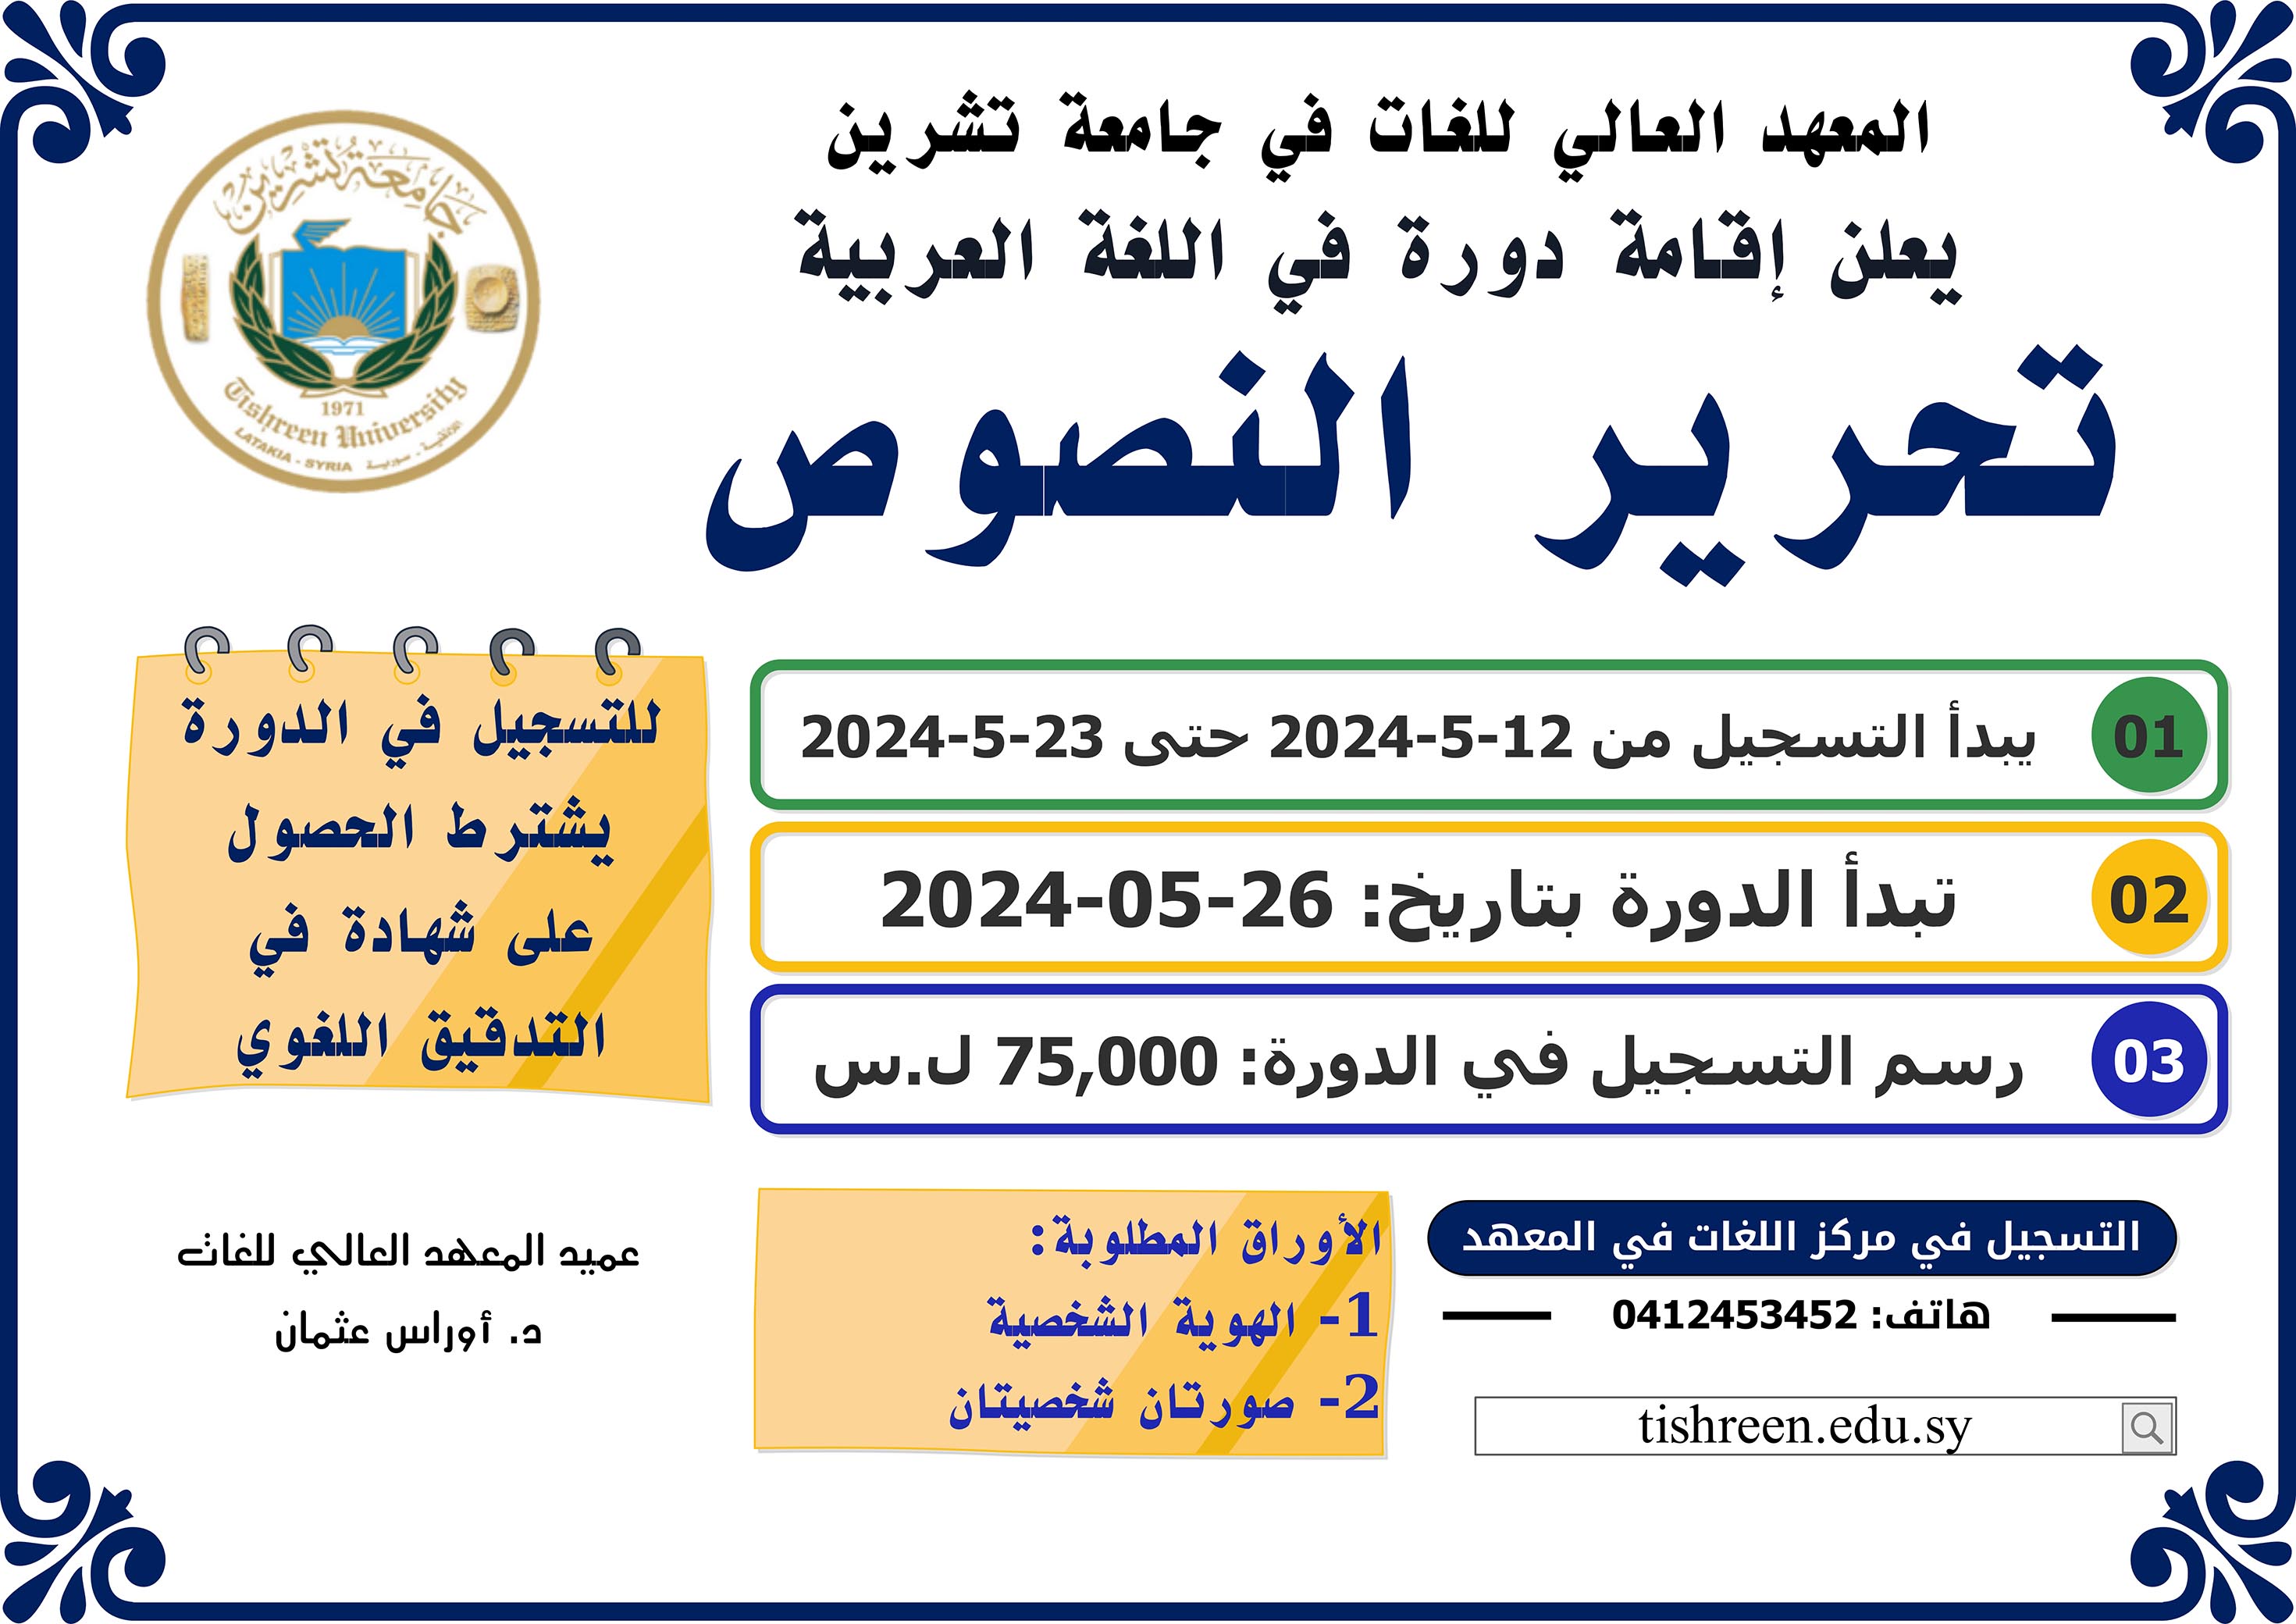 المعهد العالي للغات يعلن عن موعد التسجيل لدورة تحرير النصوص في  اللغة العربية التي ستبدأ بتاريخ 26-05-2024